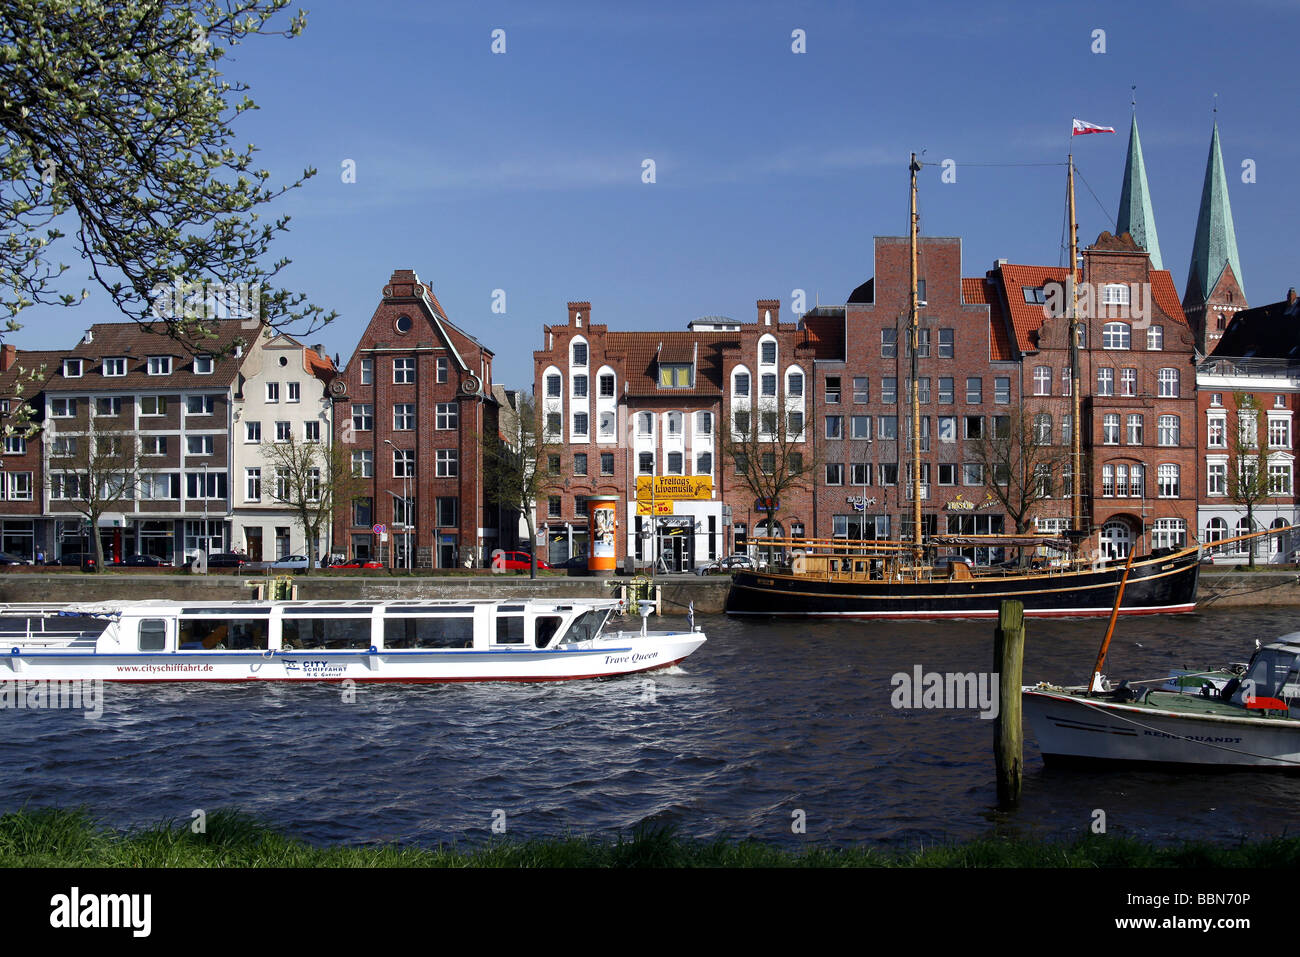 Mansiones hanseática y antiguos almacenes en el río Trave, ciudad hanseática de Lübeck, Schleswig-Holstein, Alemania, Europa Foto de stock